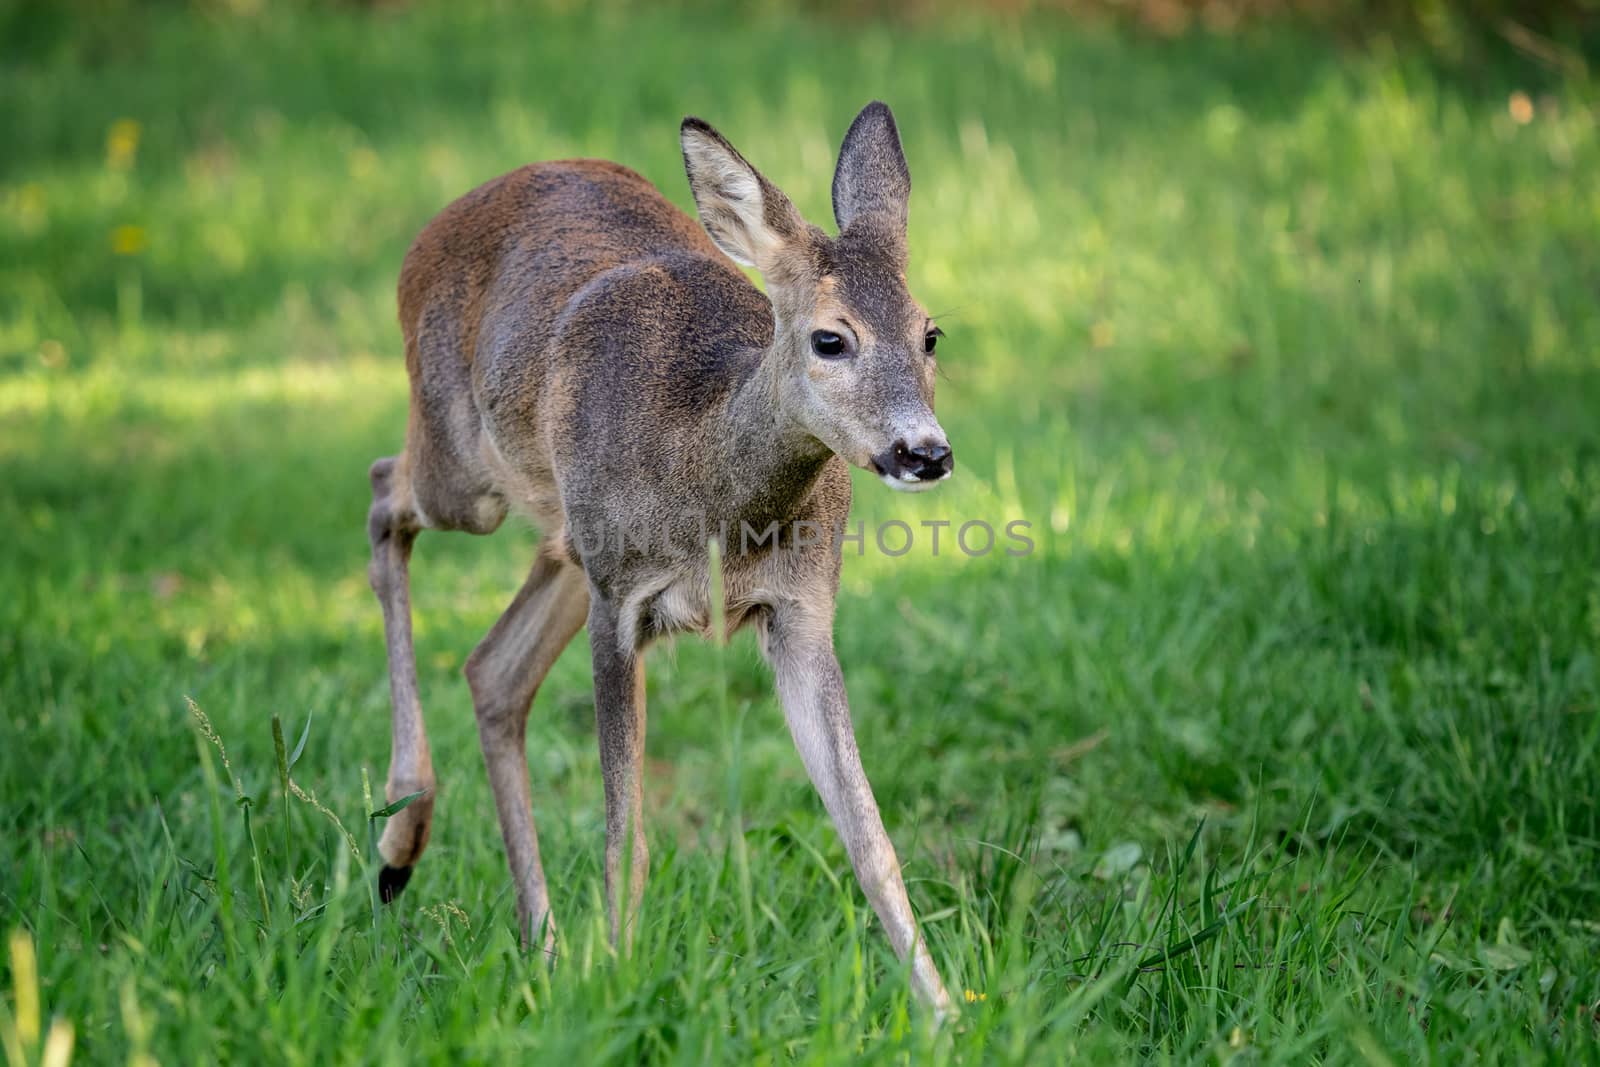 Running doe deer in grass, Capreolus capreolus. Wild roe deer in by xtrekx